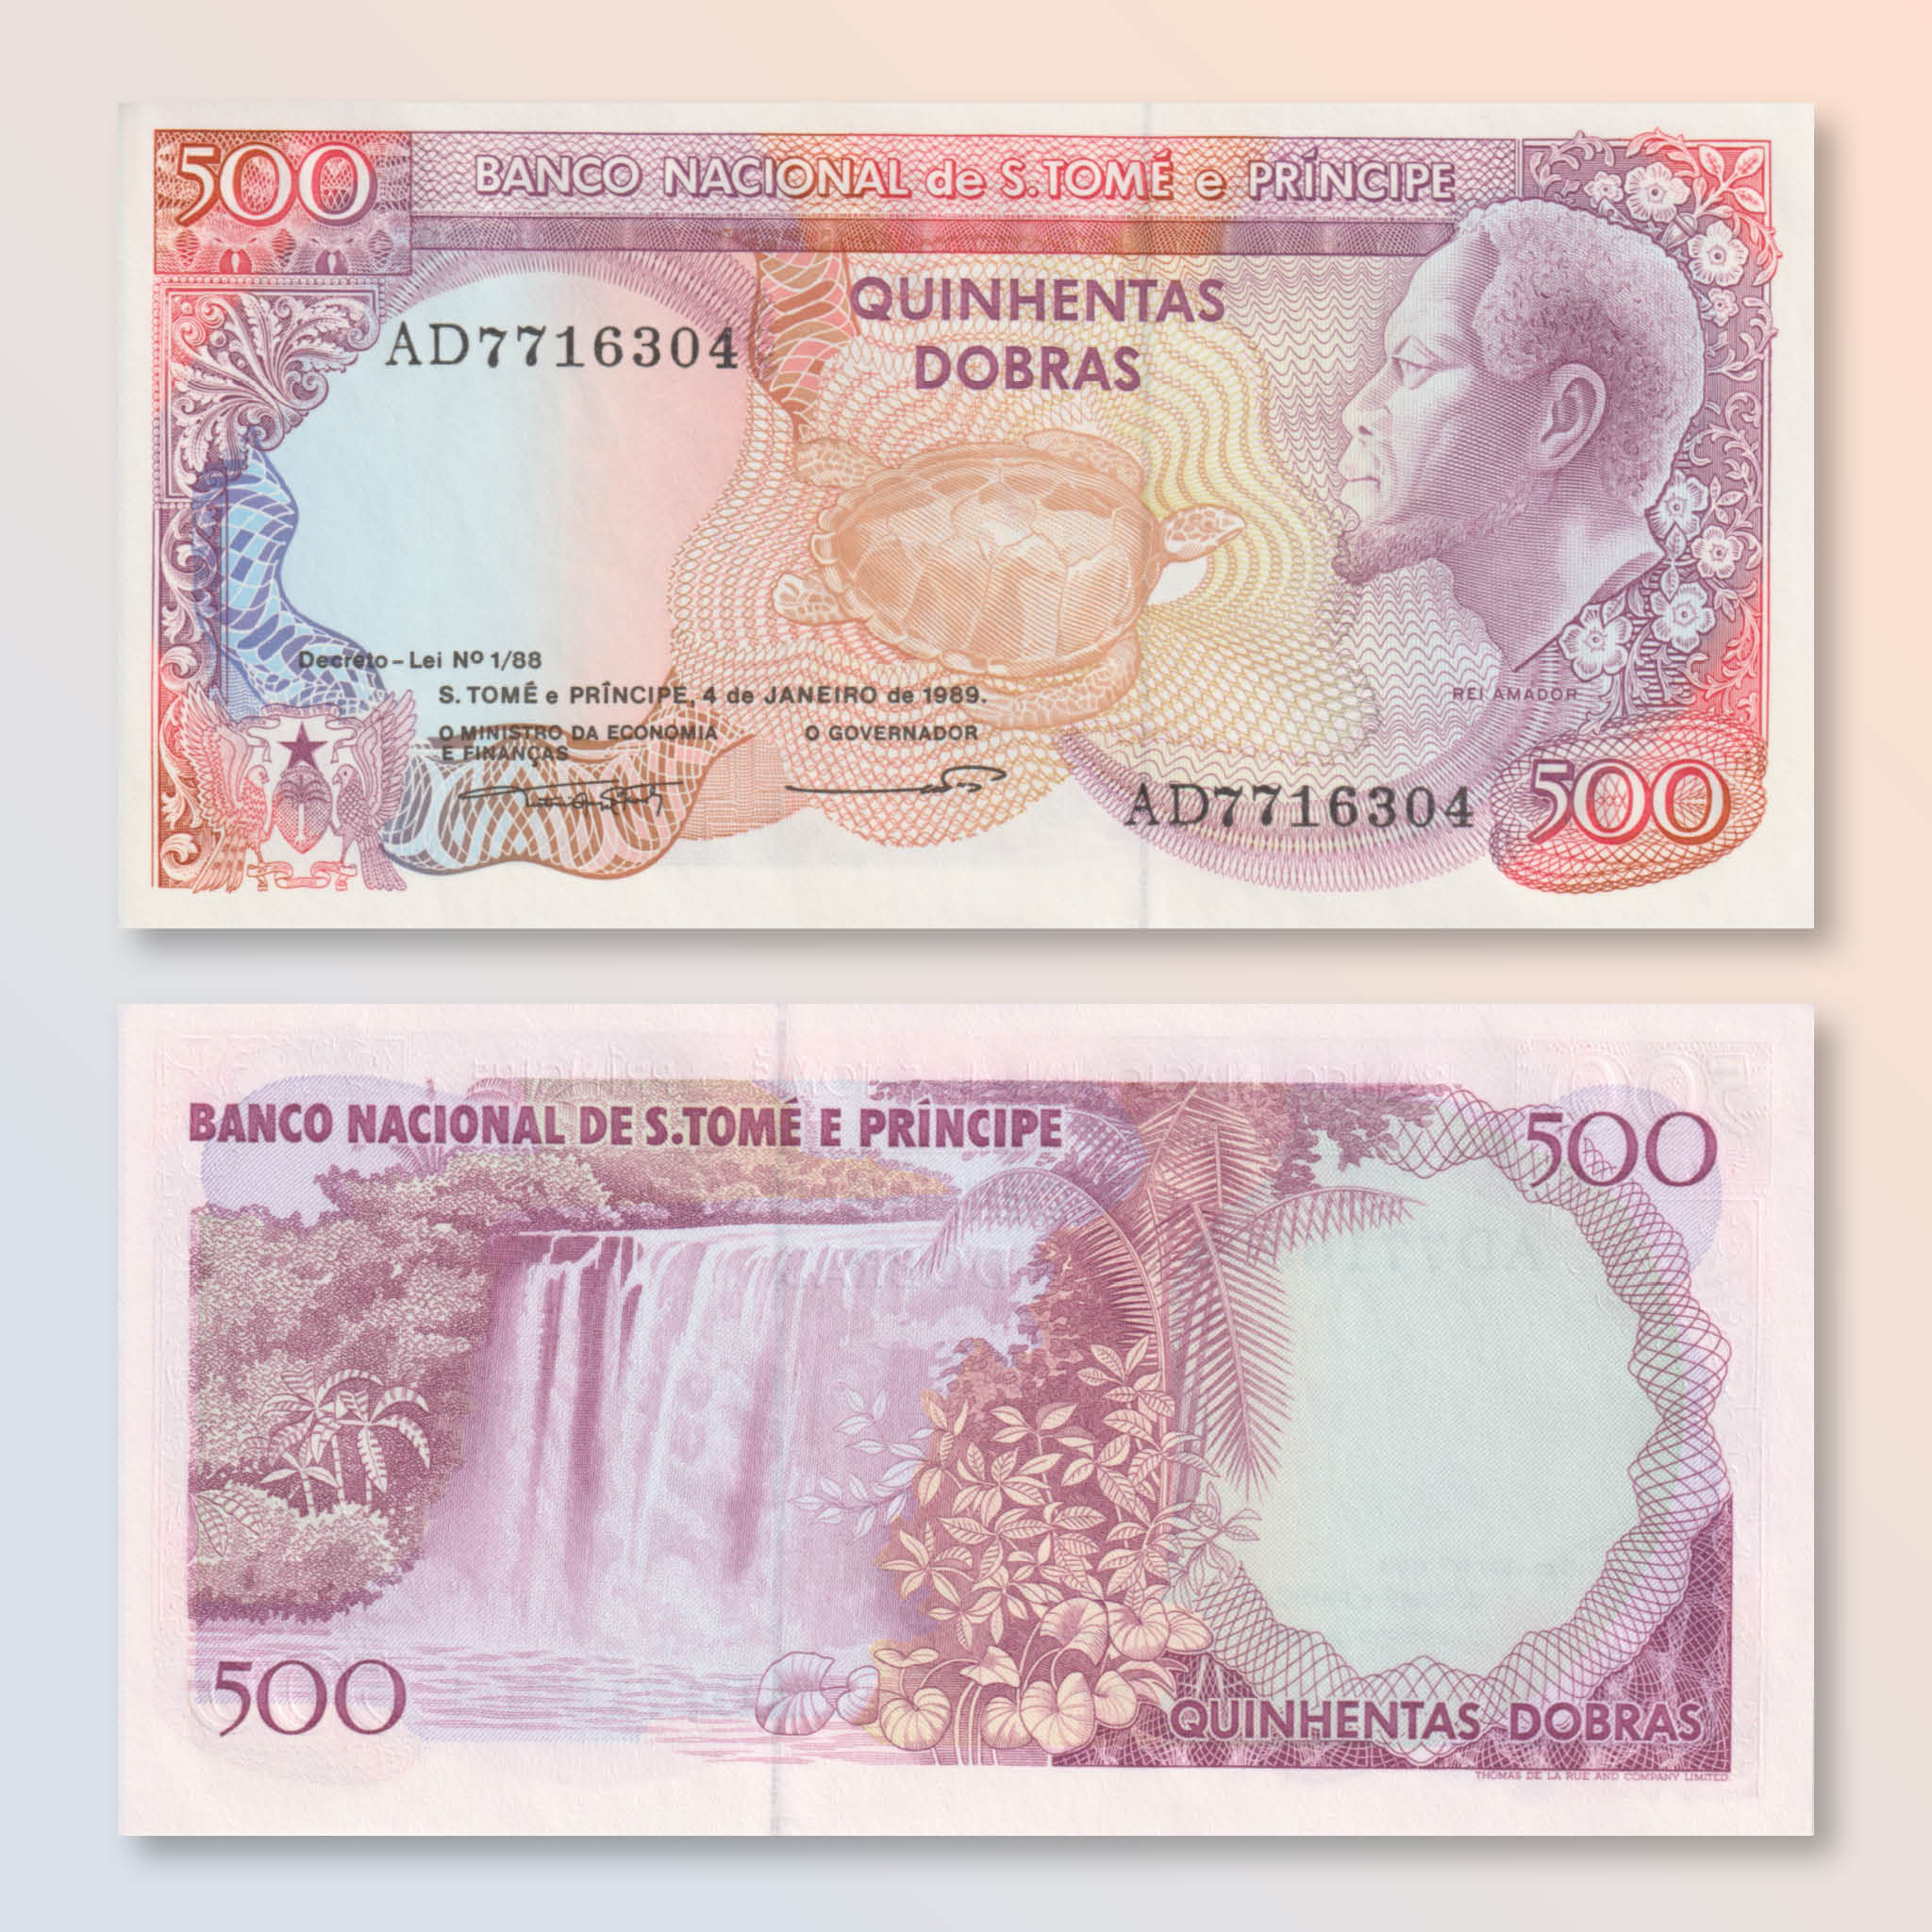 São Tomé & Príncipe 500 Dobras, 1989, B217a, P61, UNC - Robert's World Money - World Banknotes